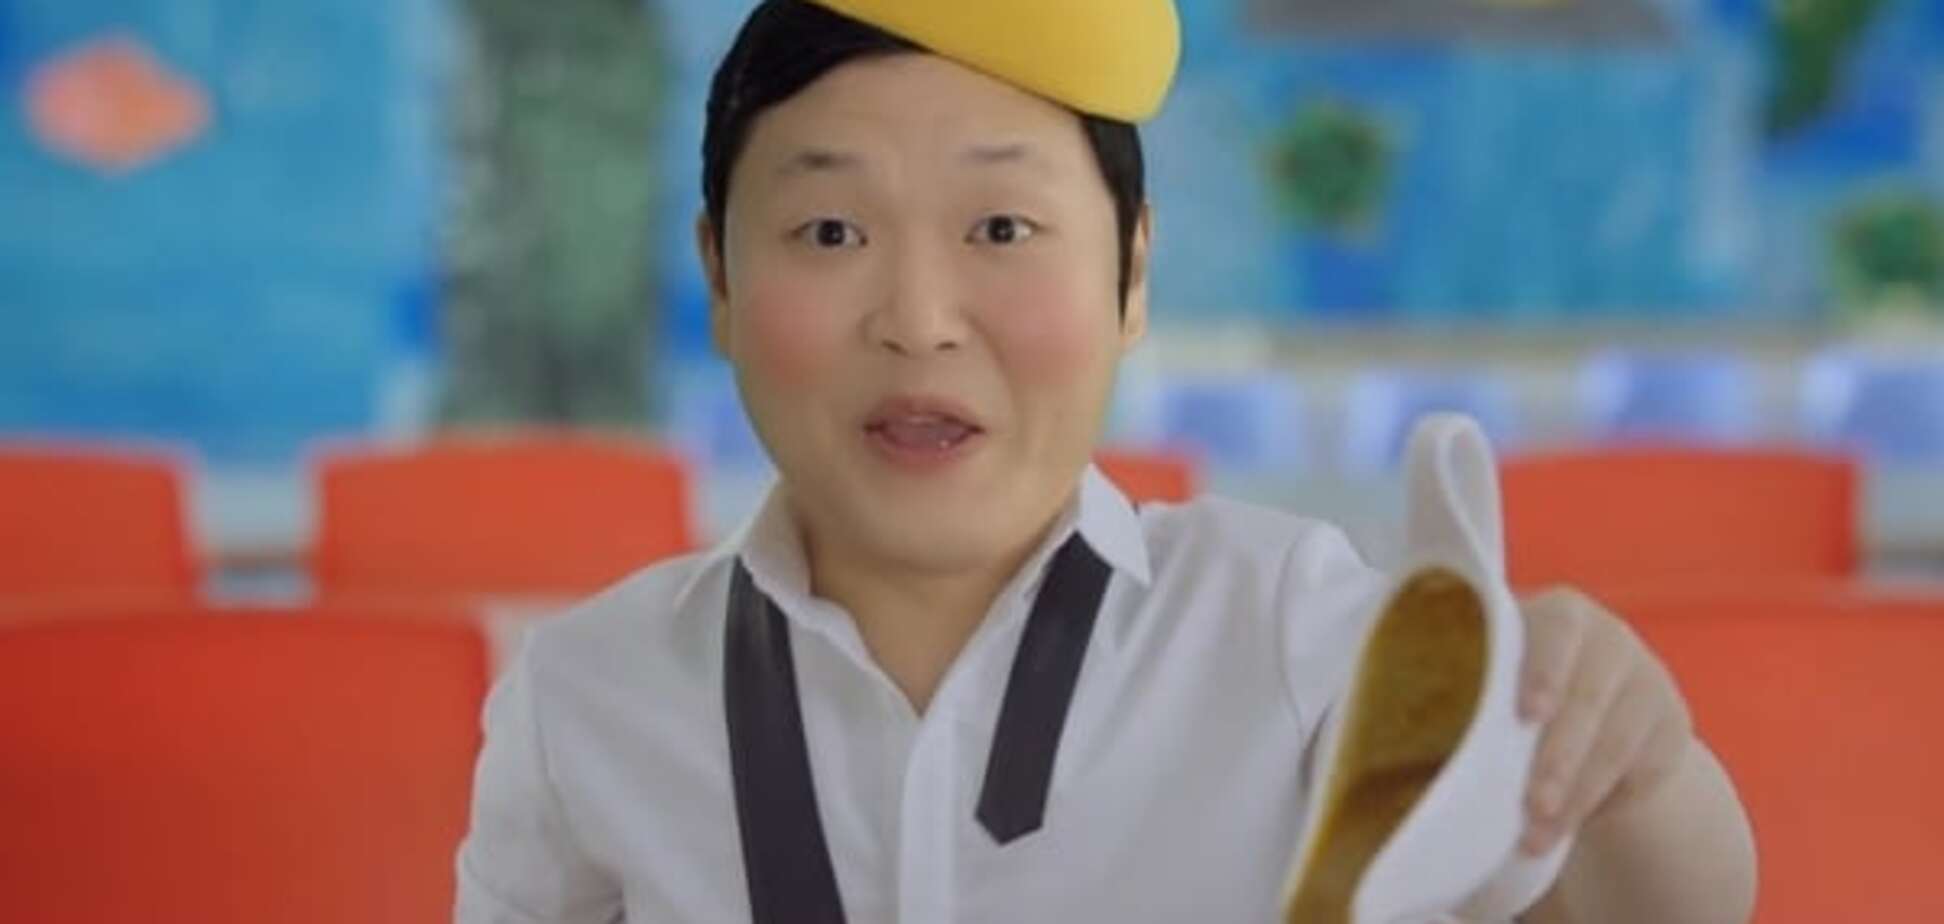 Oppan Gangnam style: Psy выпустил новый смешной клип